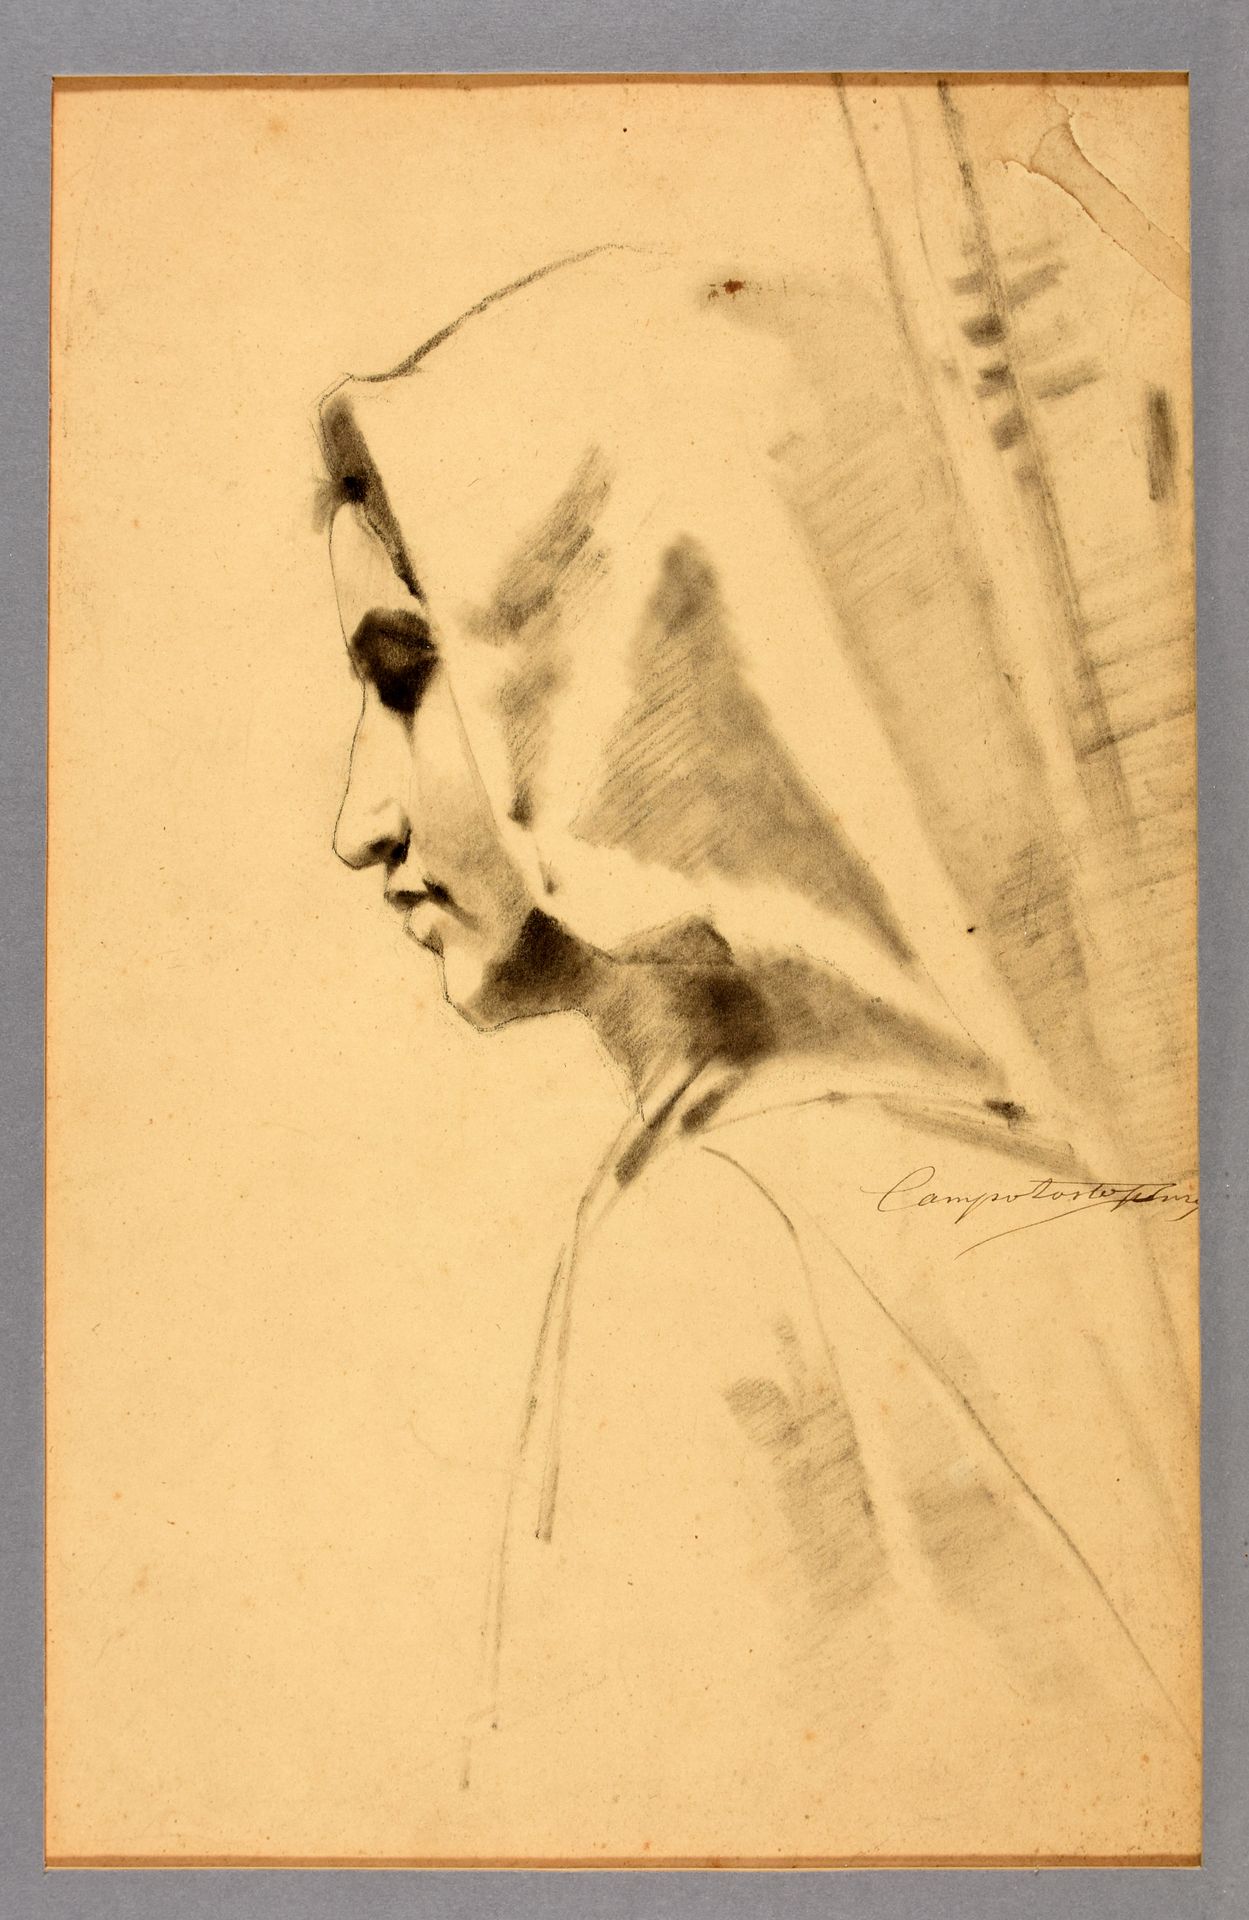 Campotosto, Henri CAMPOTOSTO, Henri Joseph Portrait of a woman in profile. 1890 &hellip;